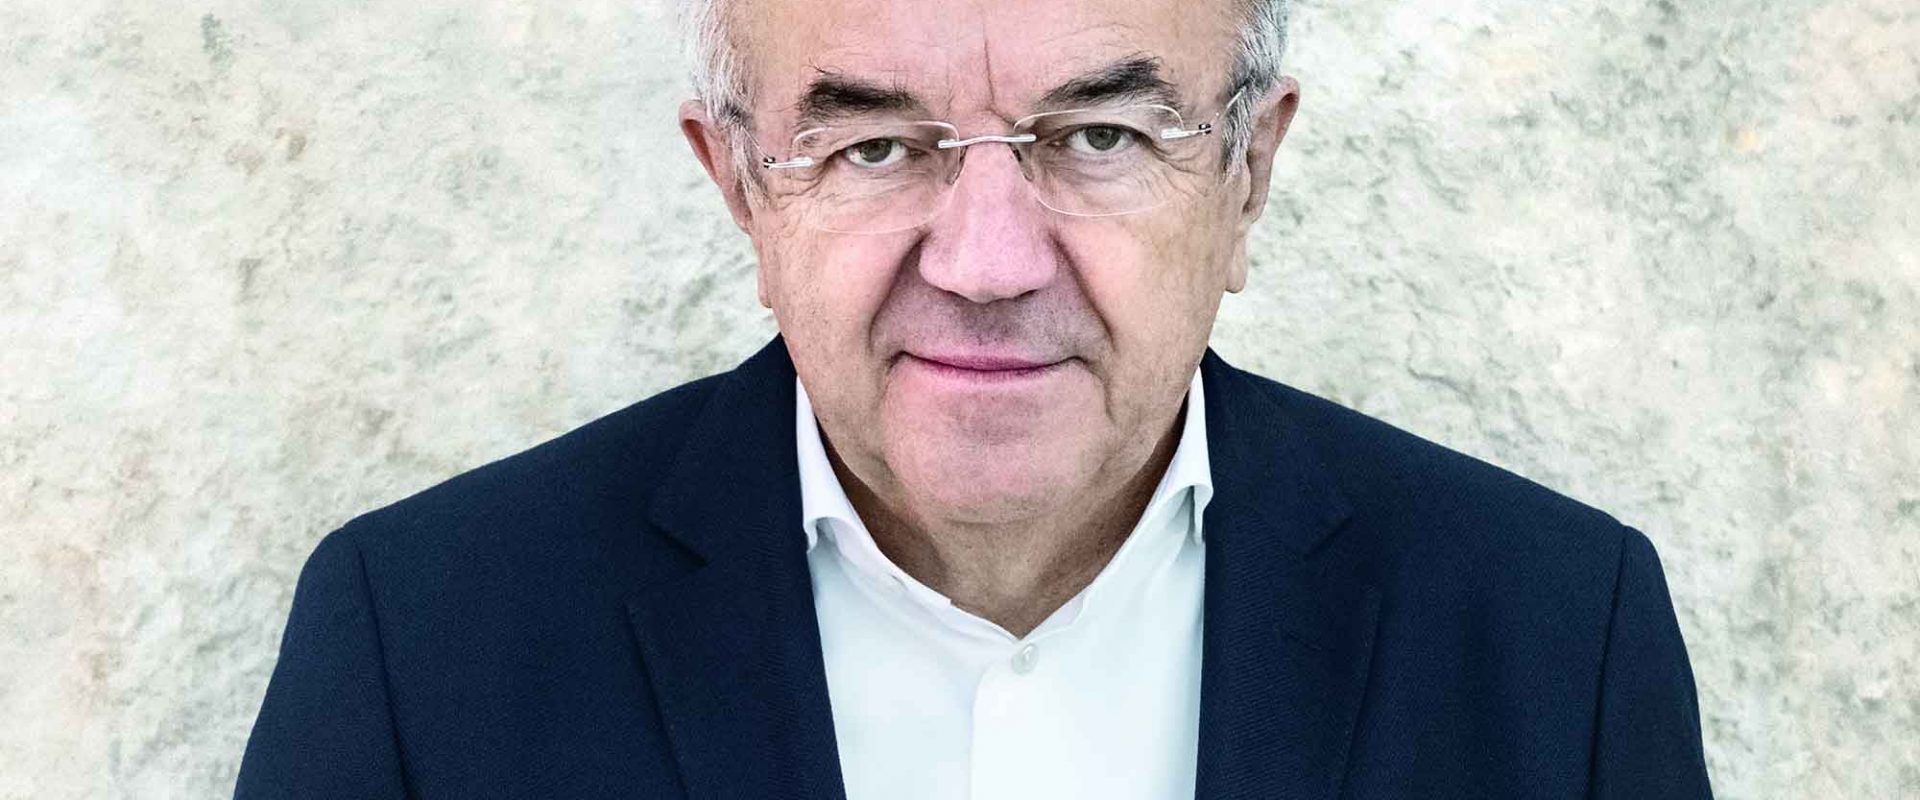 Prof. Werner Sobek